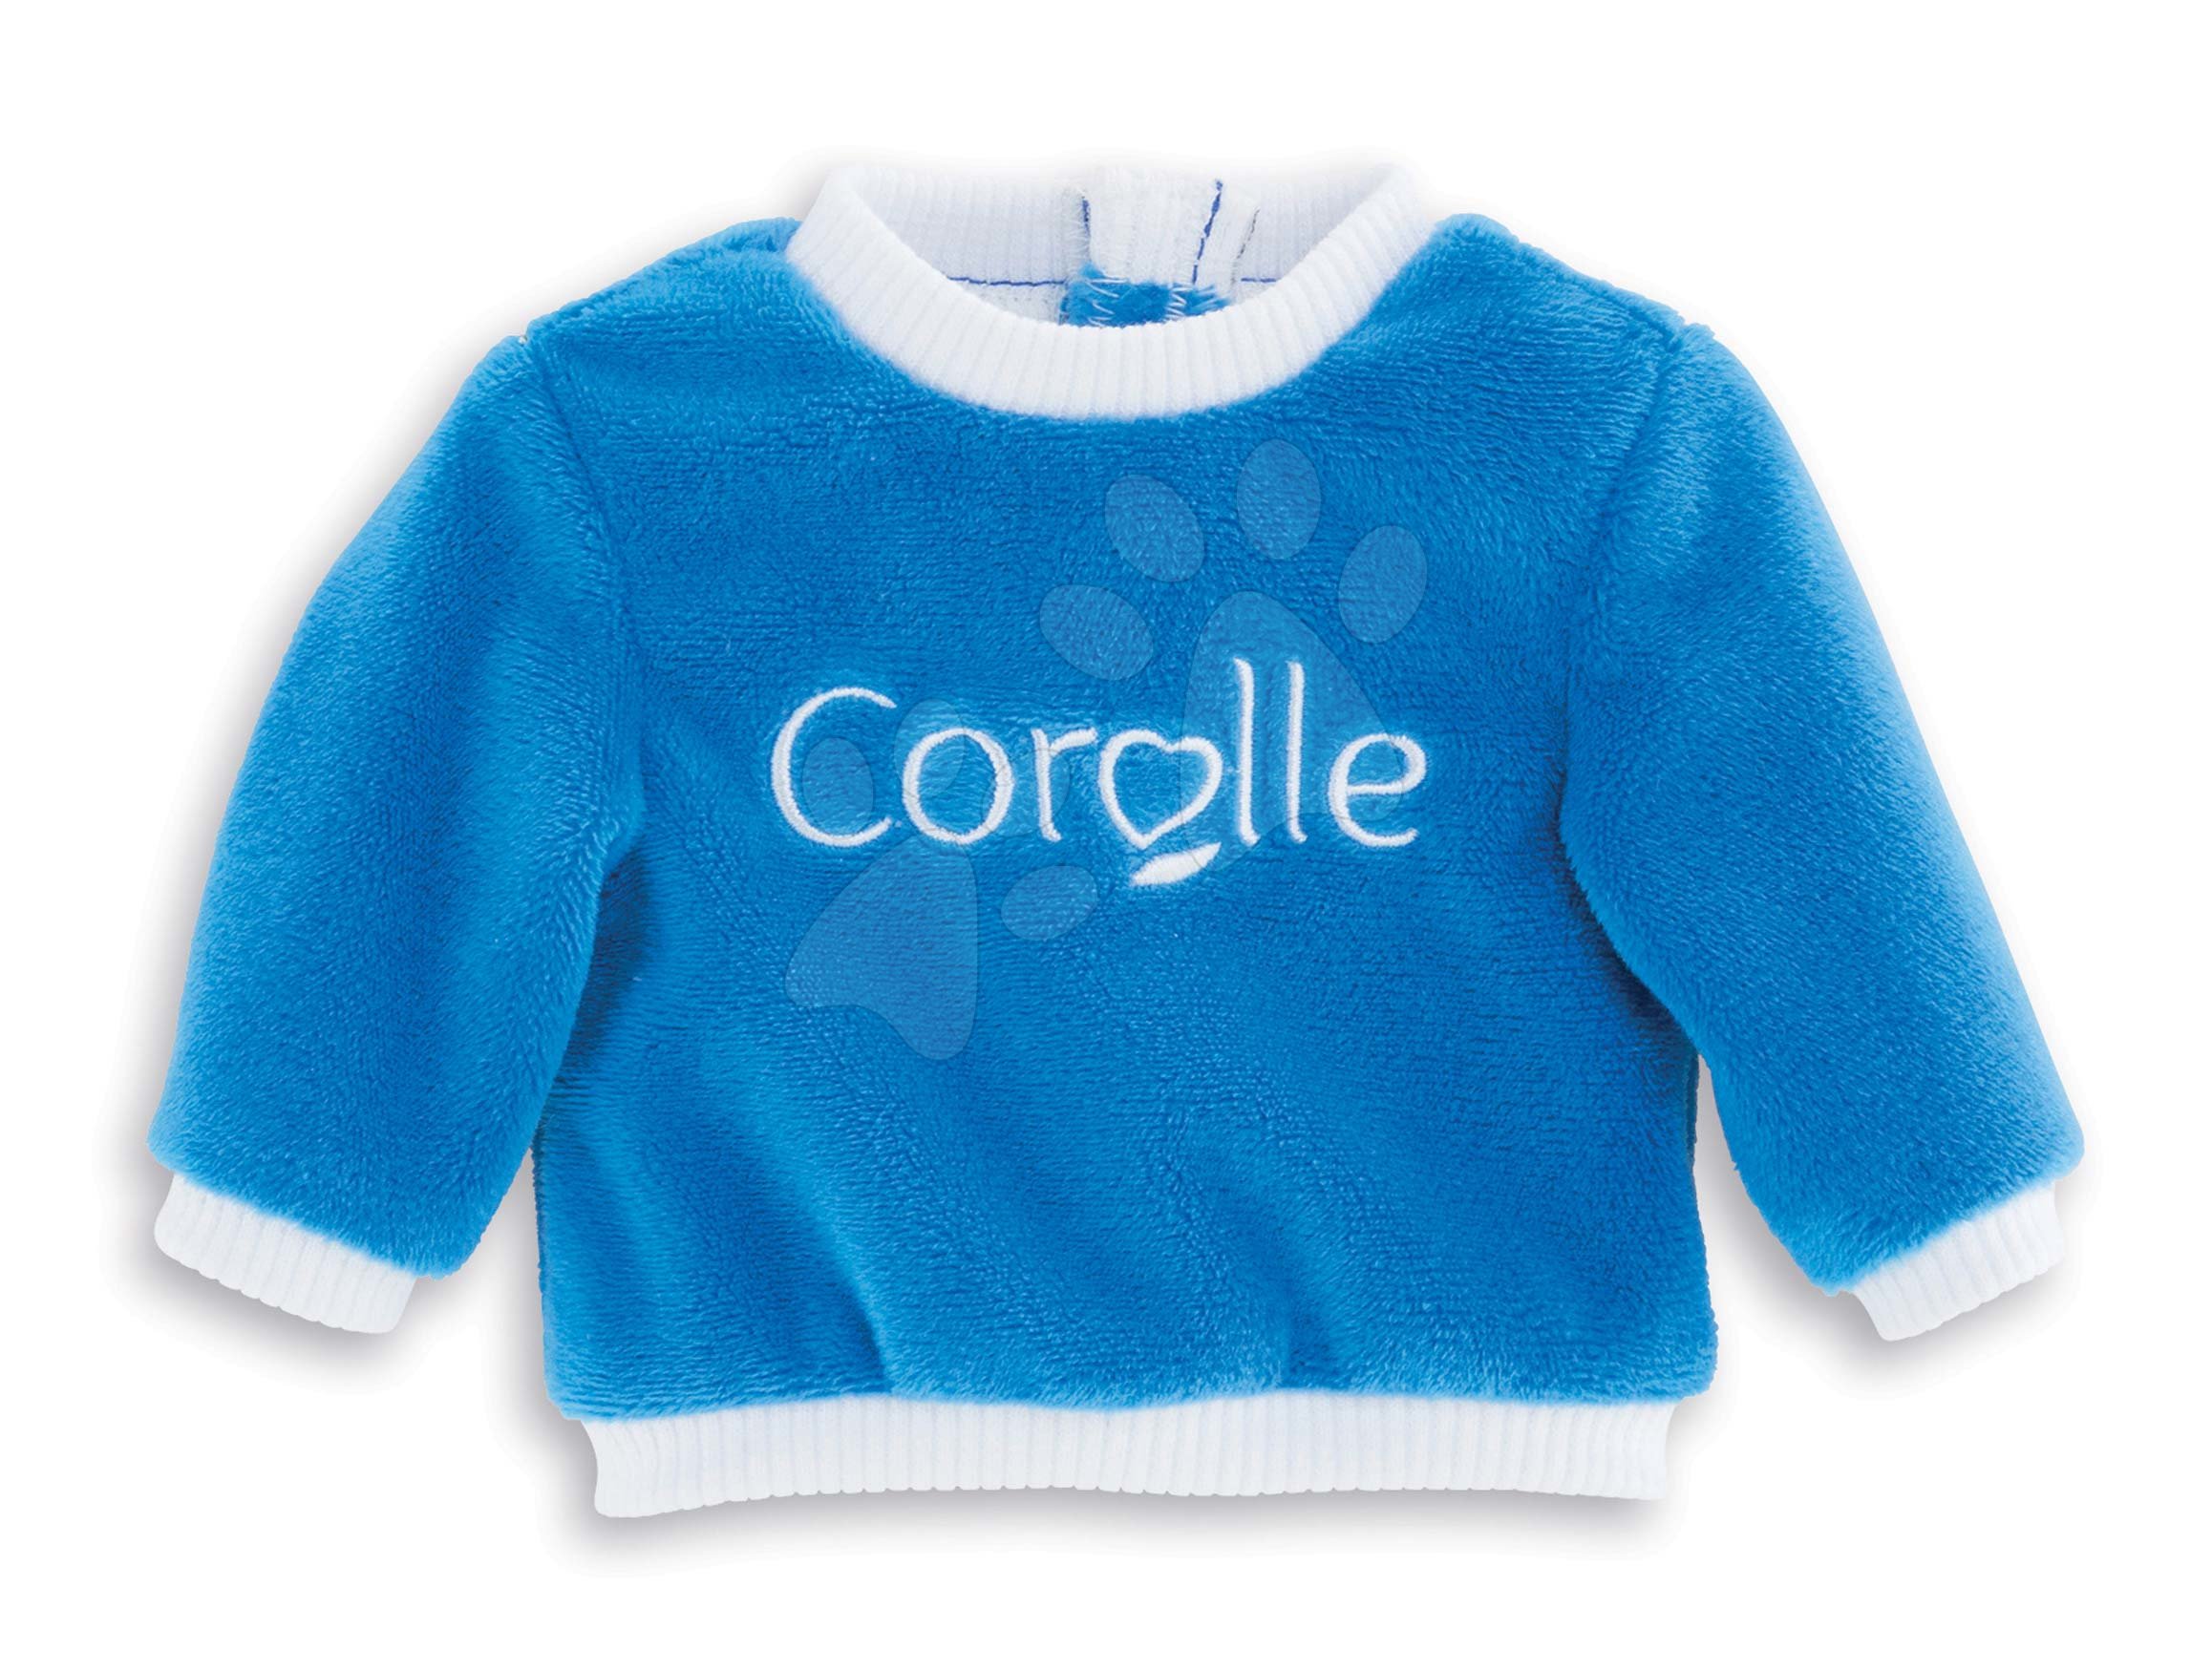 Oblečenie Sweat Blue Ma Corolle pre 36 cm bábiku od 4 rokov